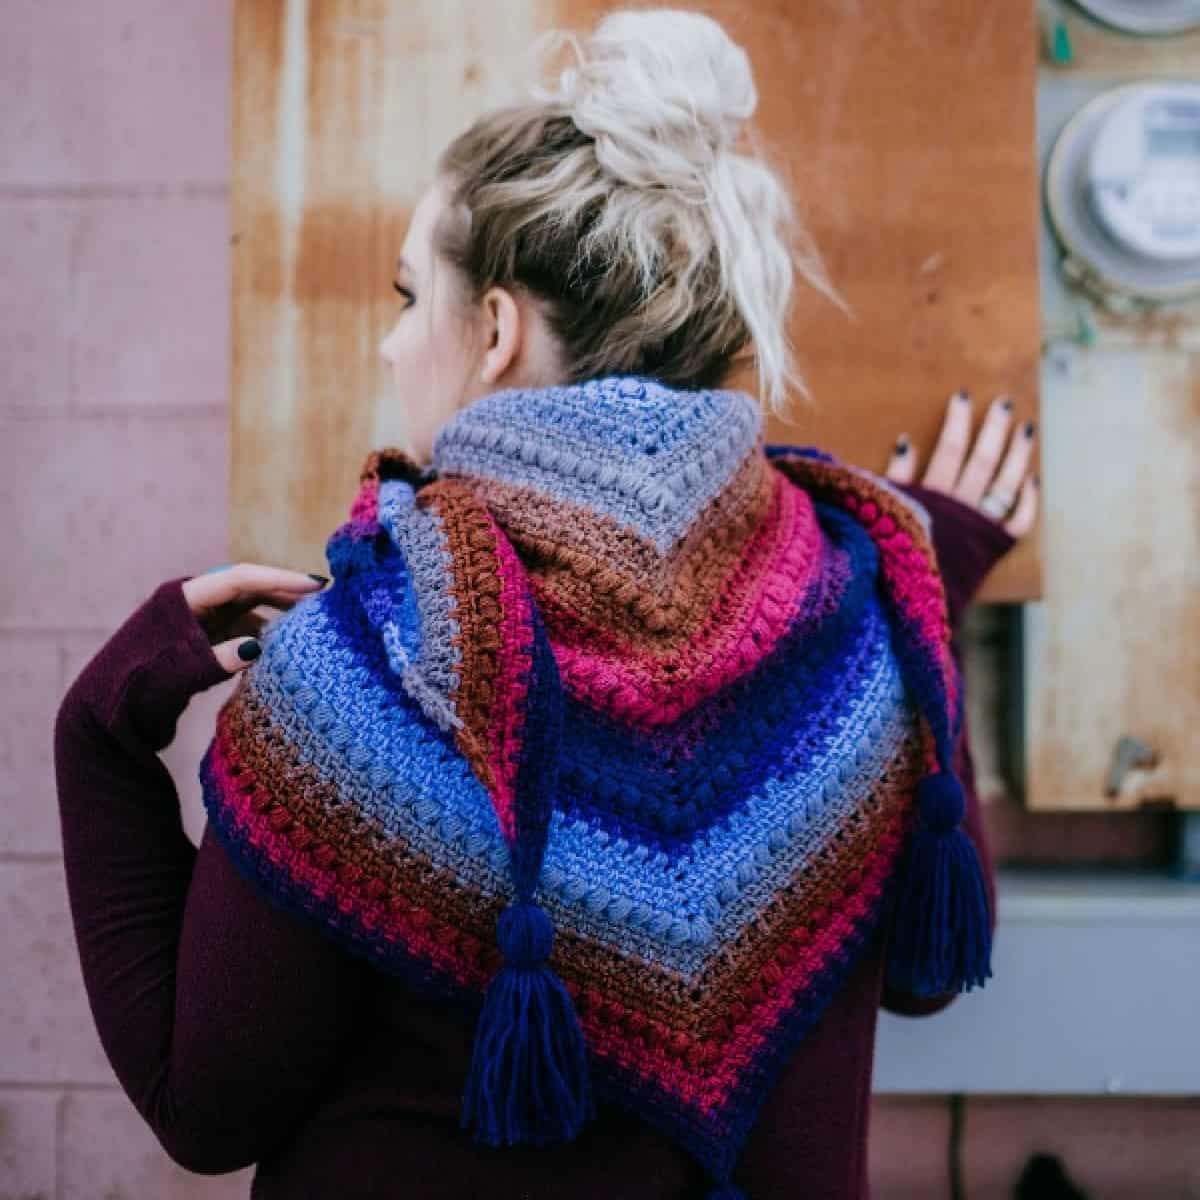 Woman modeling a triangular crochet shawl.